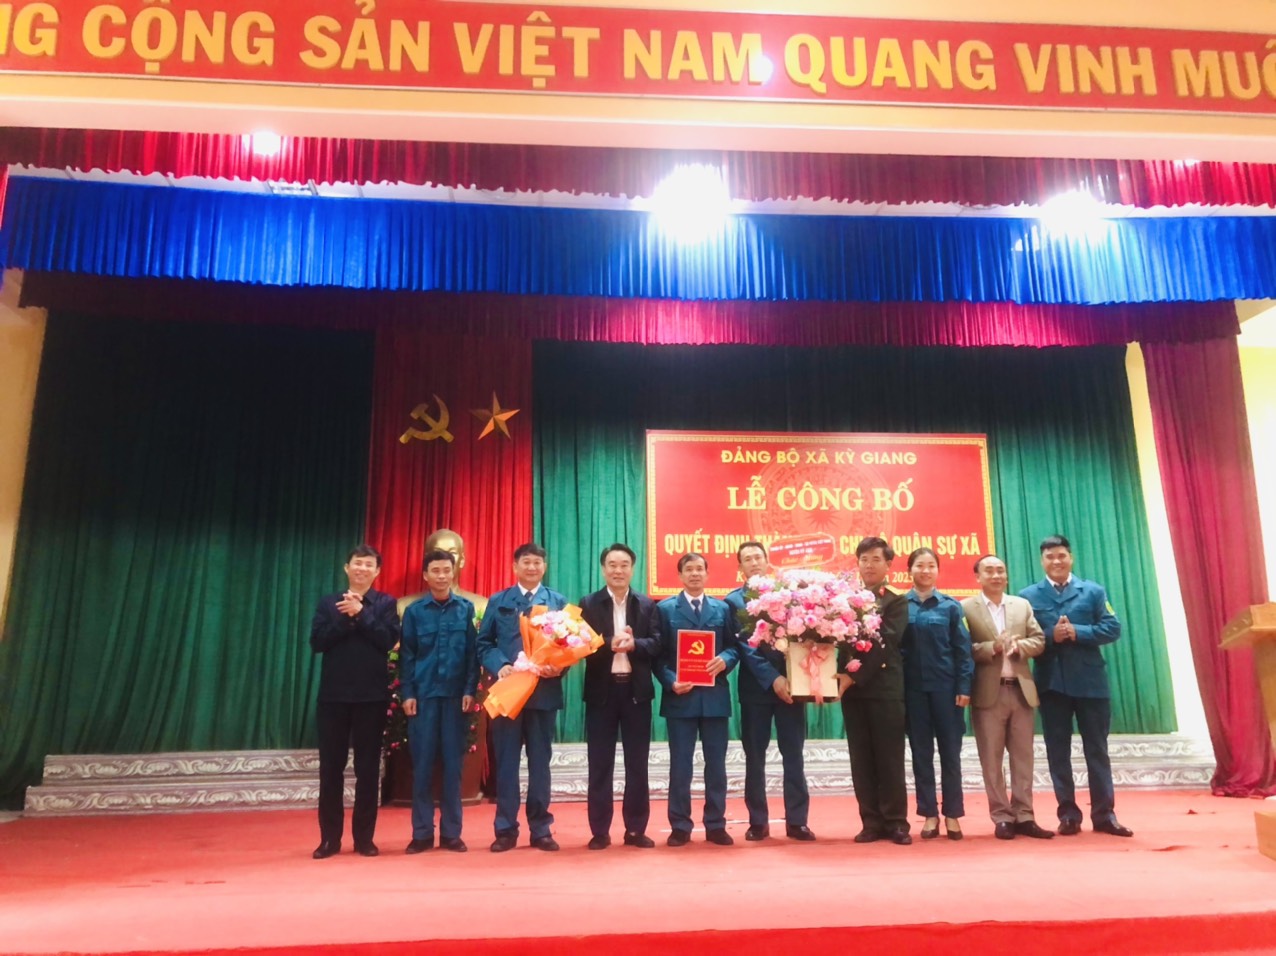 Đảng ủy xã Kỳ Giang công bố thành lập chi bộ Quân Sự xã